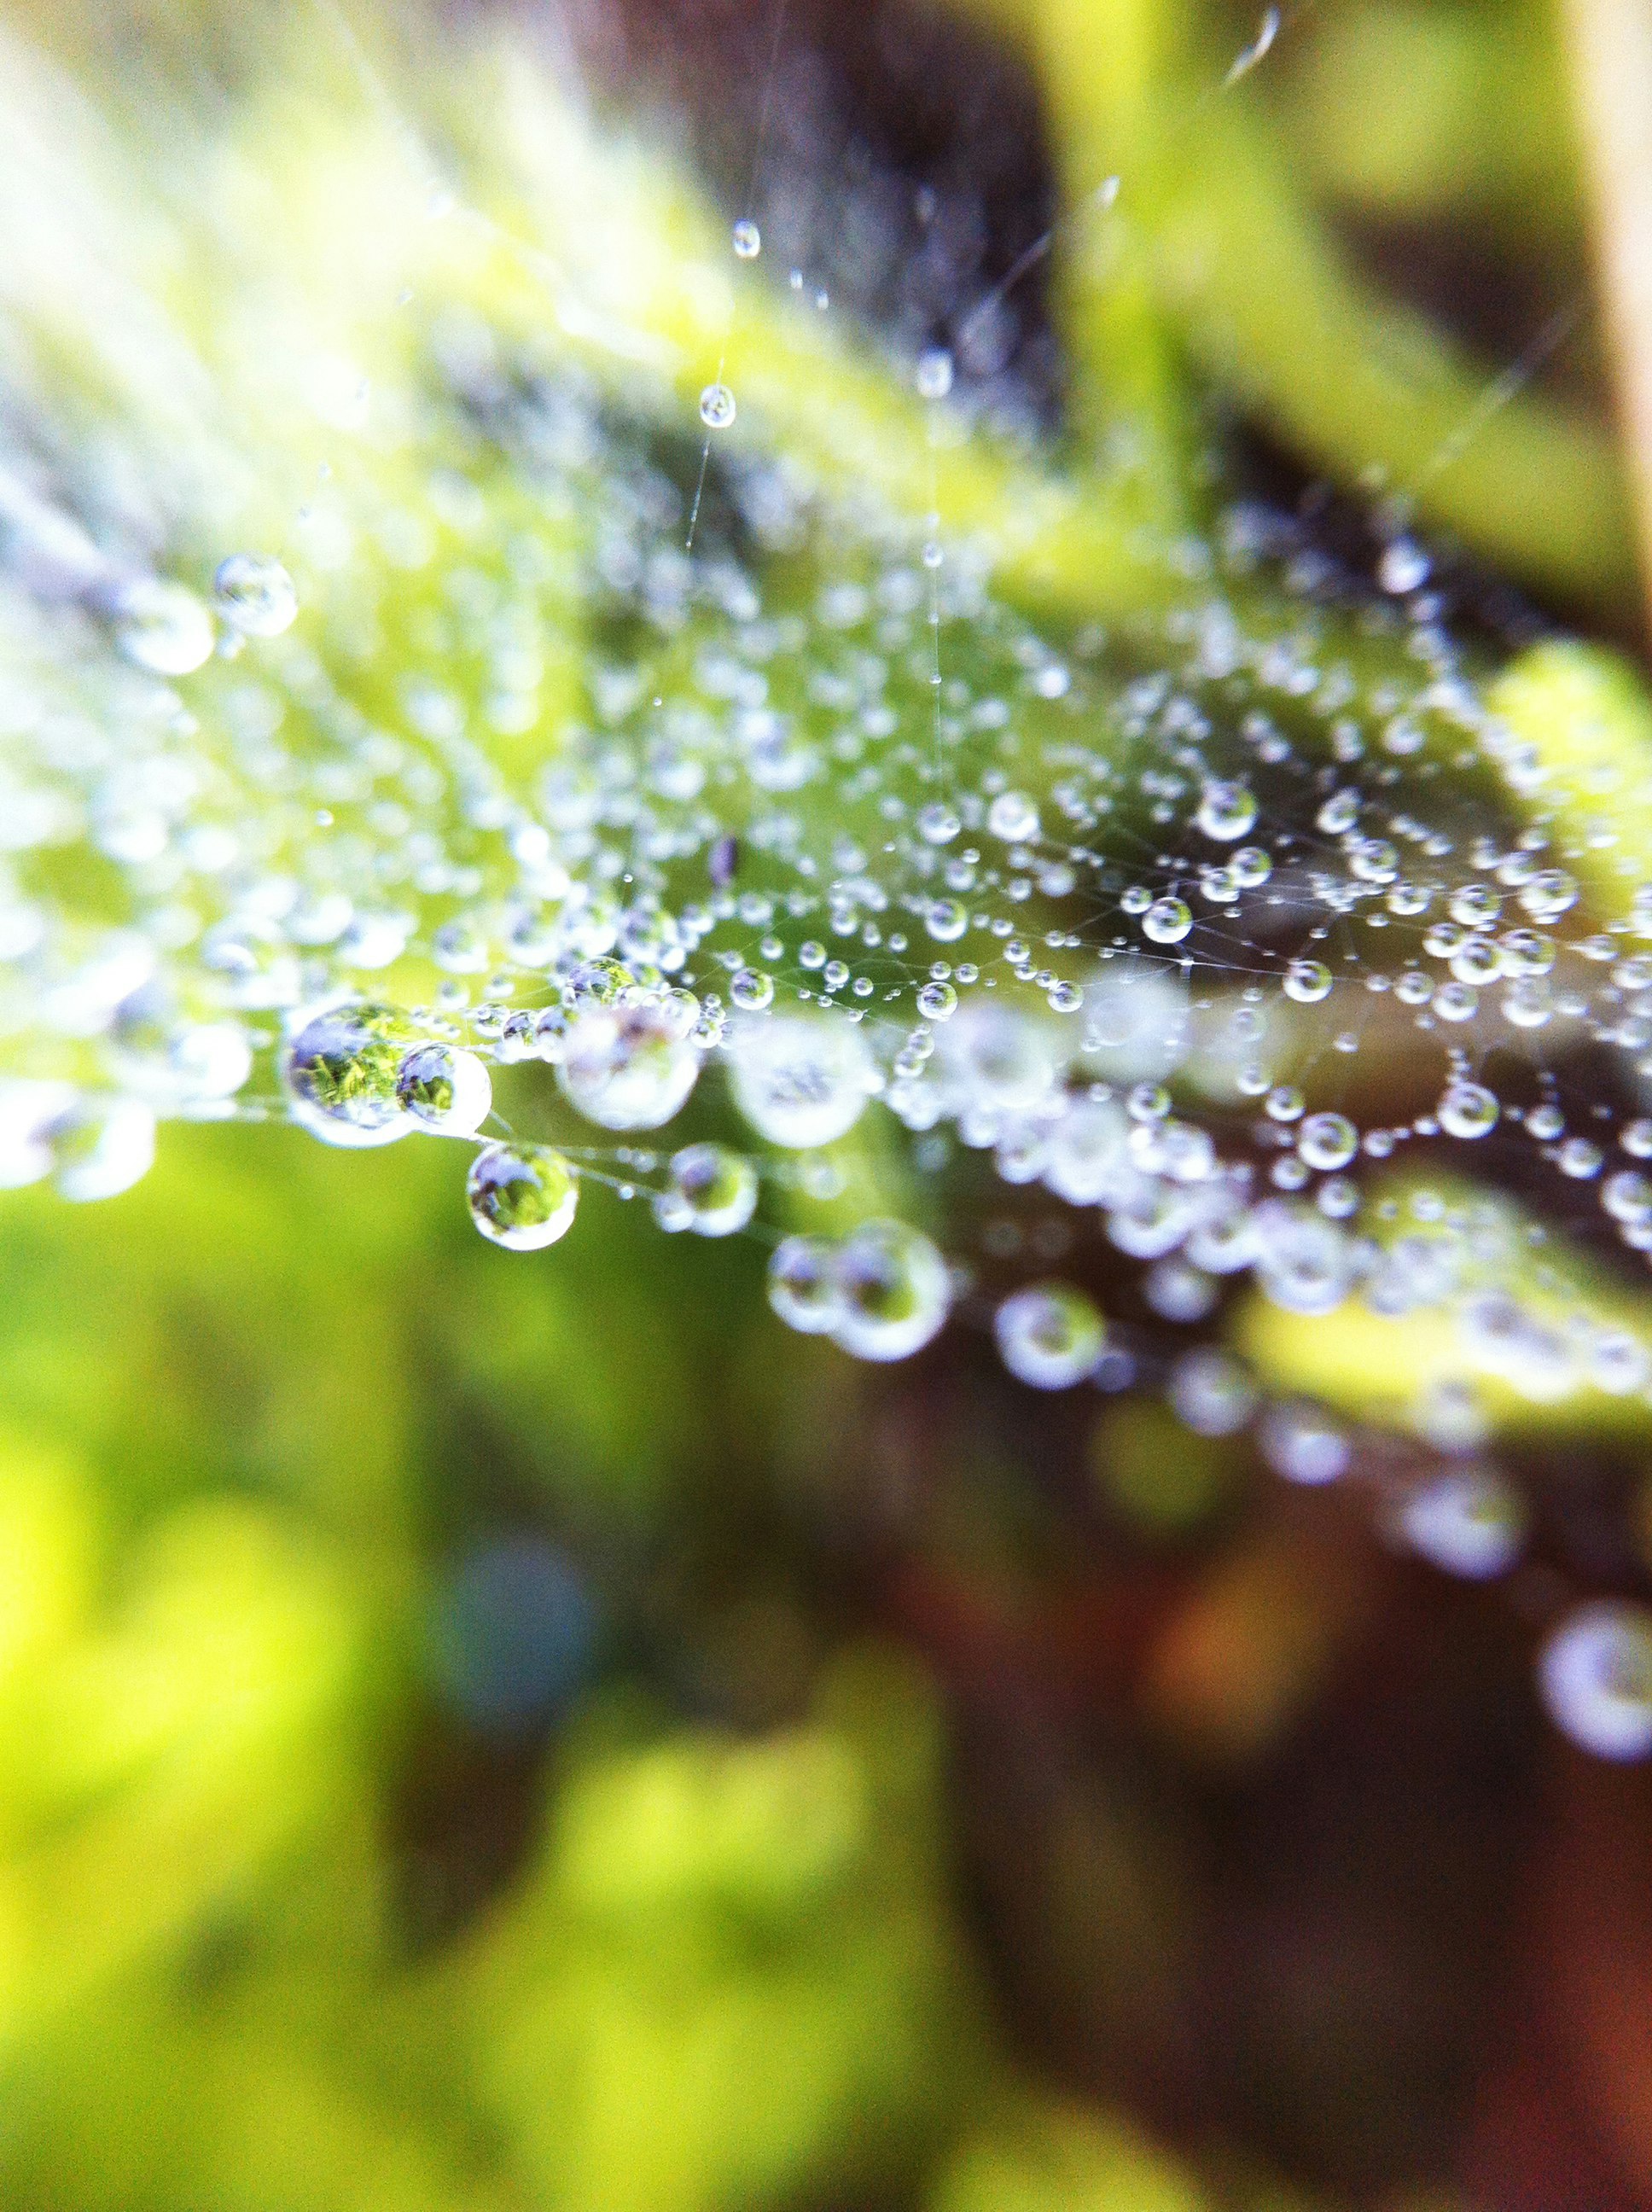 water droplets on spider web in tilt shift lens